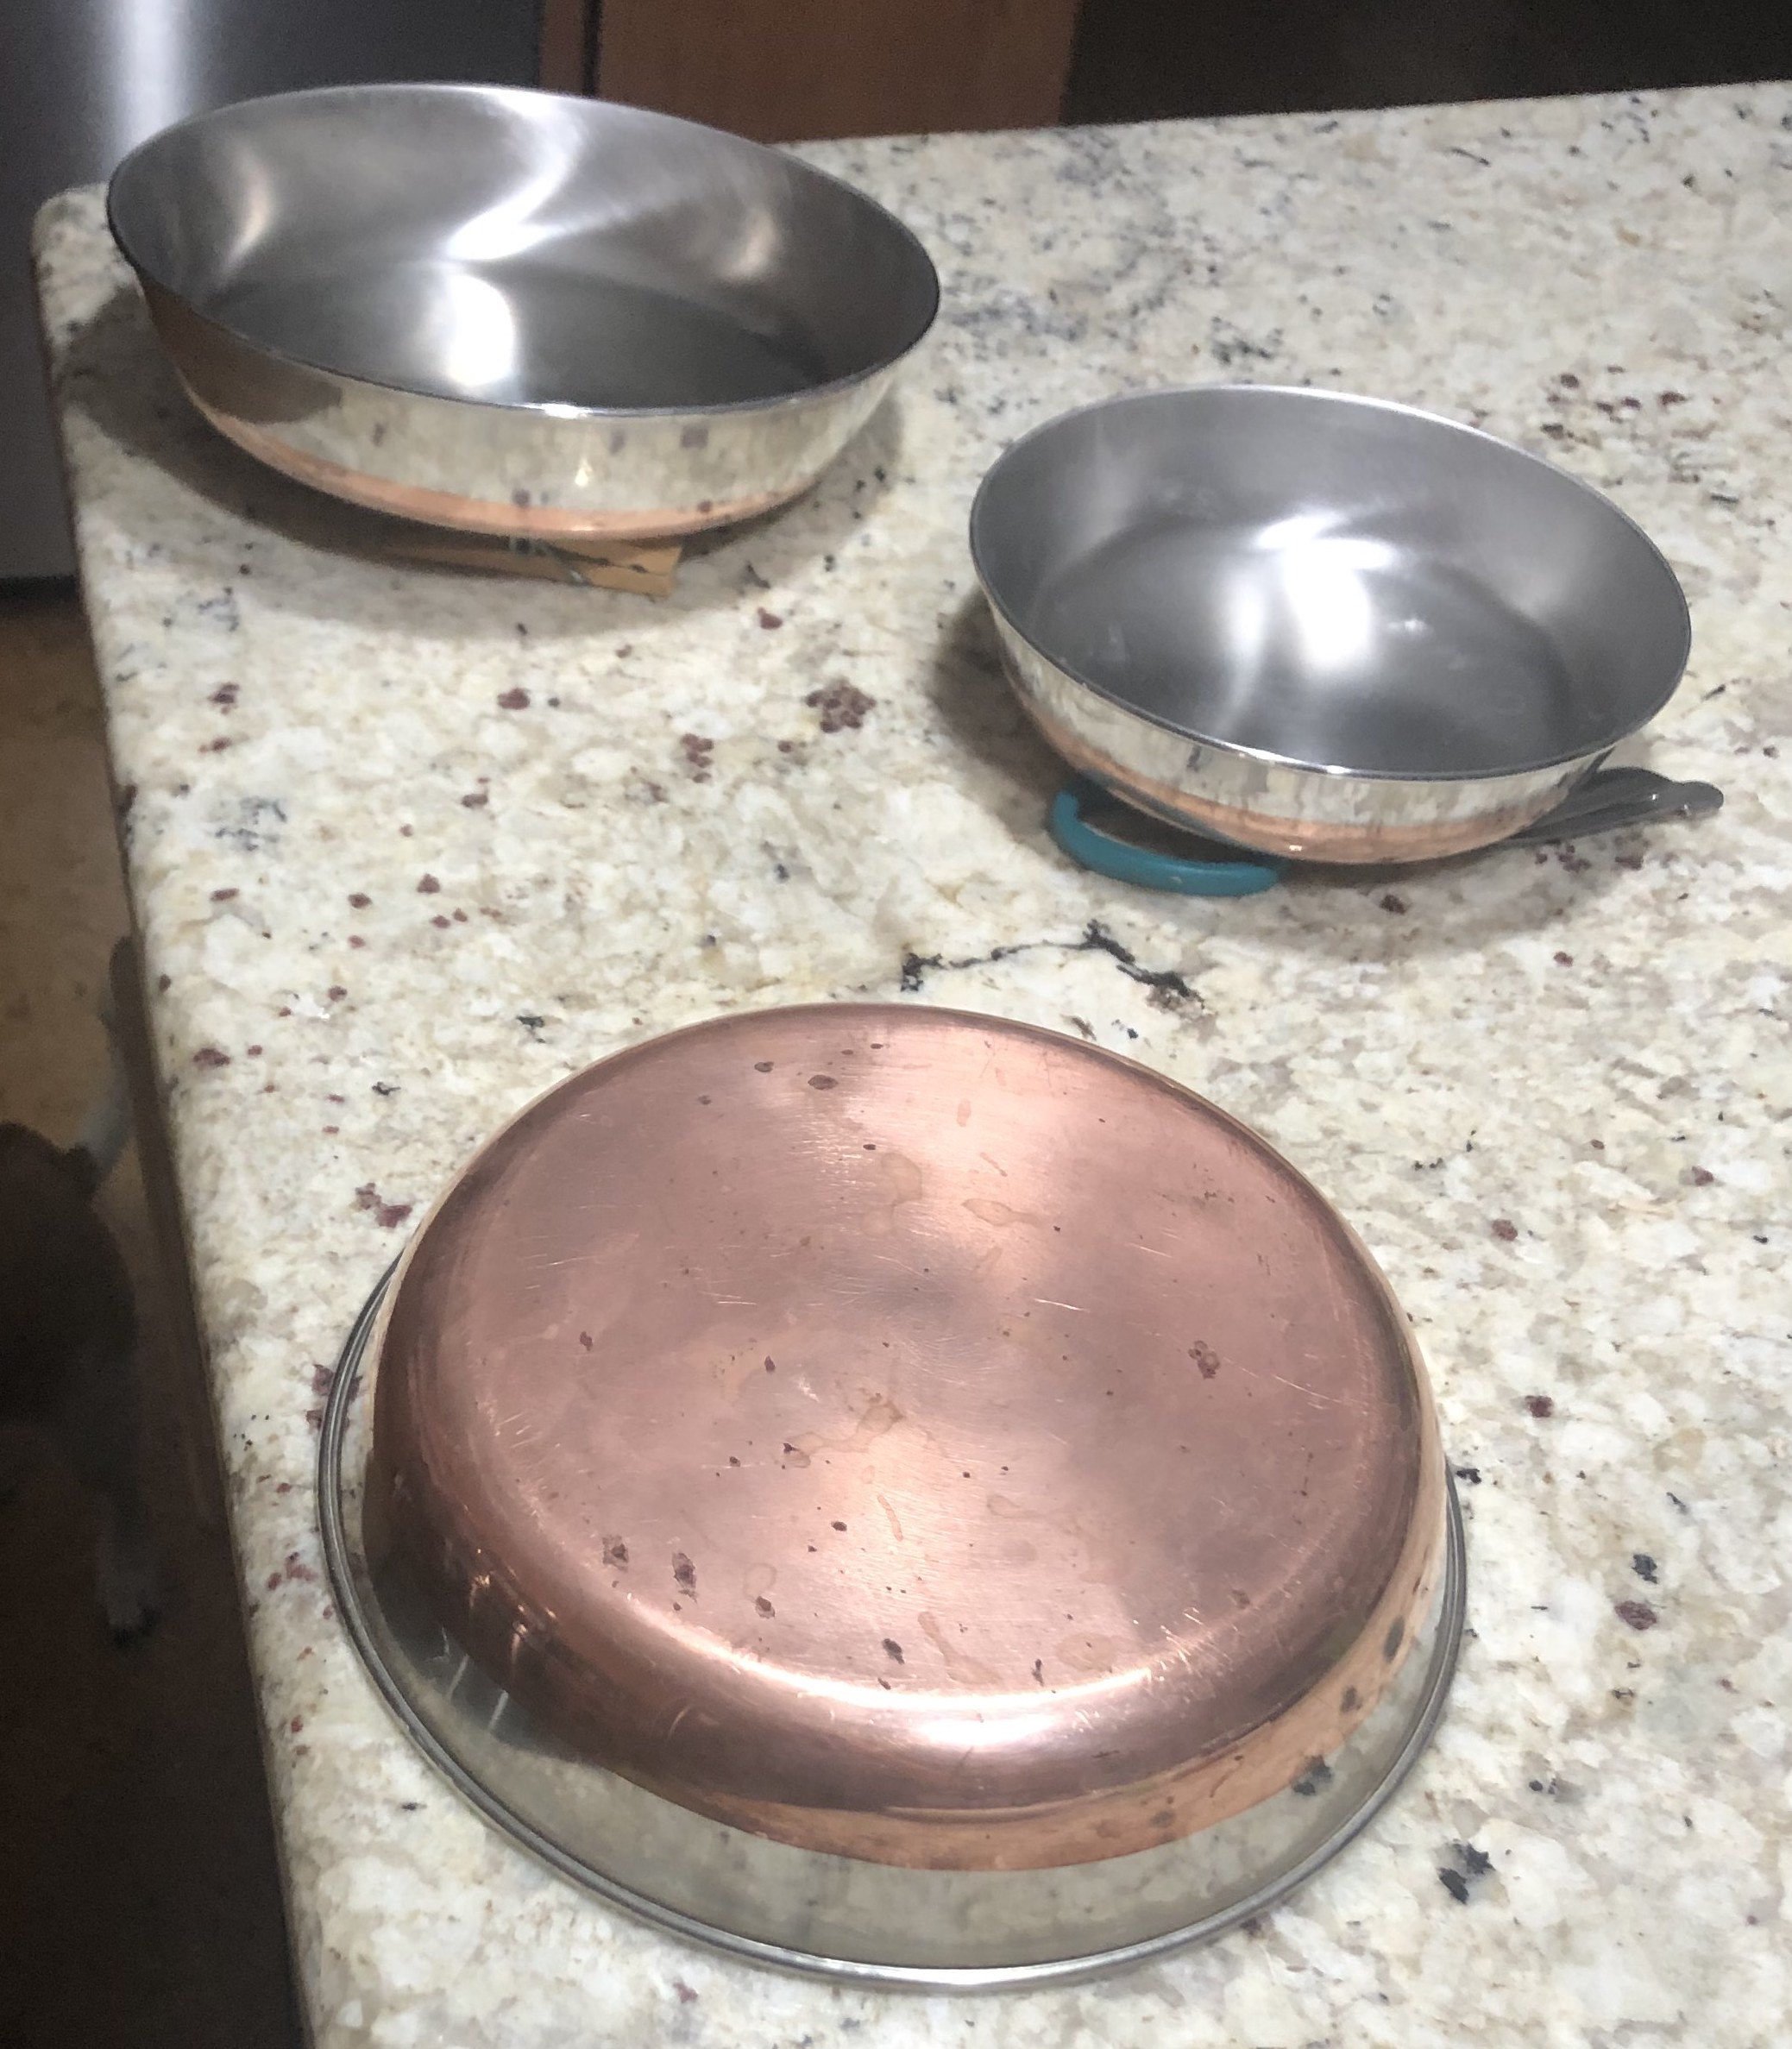 Pots Pans Set Glass Top Stove, Sells Revere Ware Pots Pans